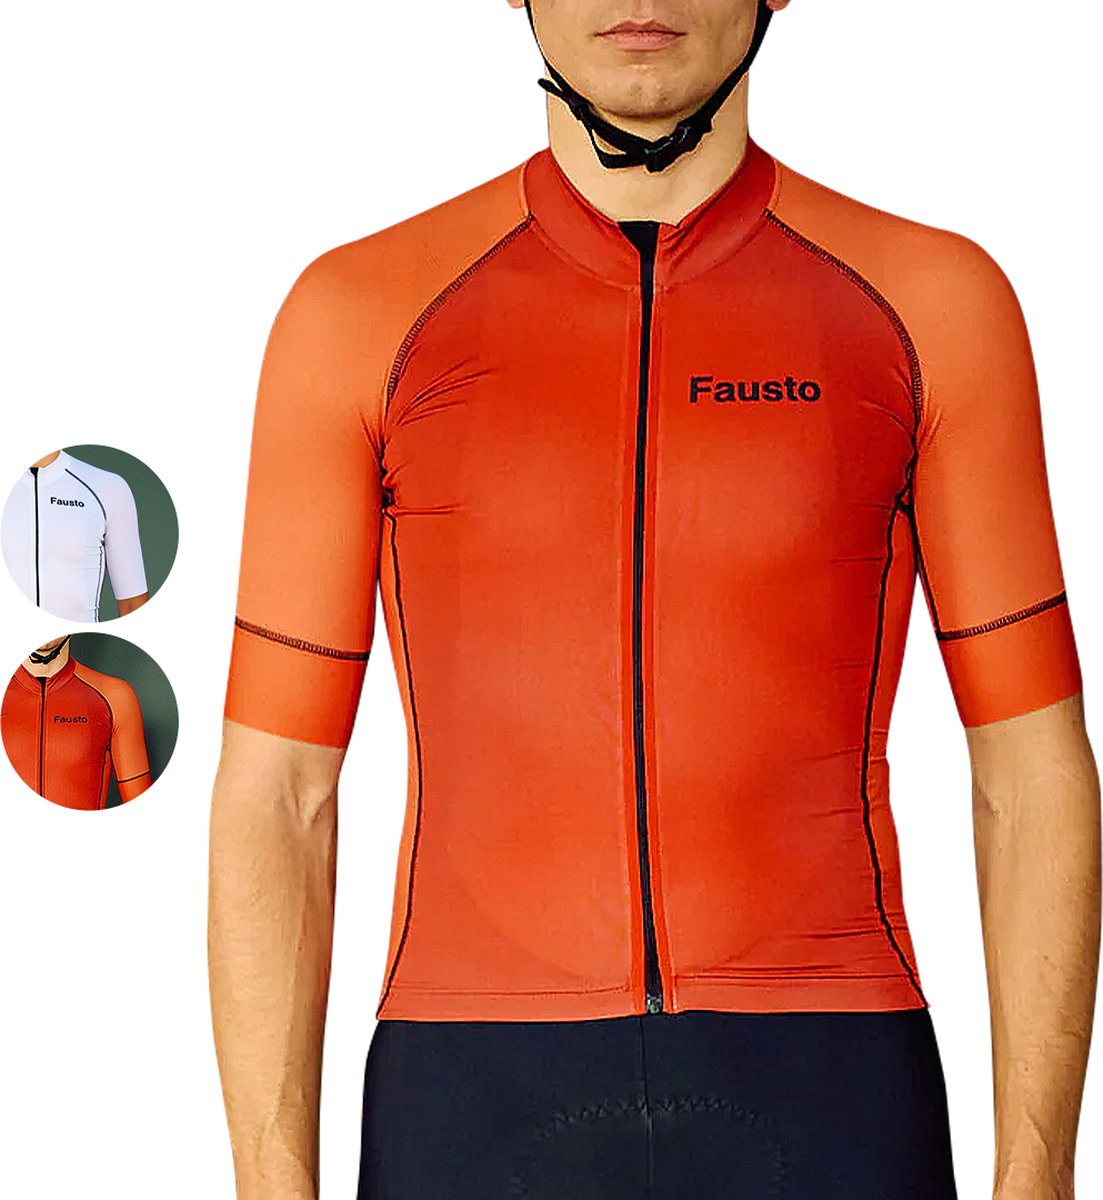 Fausto Cycling Shades - Wielrenshirt met Korte Mouwen - Fietskleding voor Heren -Wielertrui - Fietstrui - Rood - Maat L